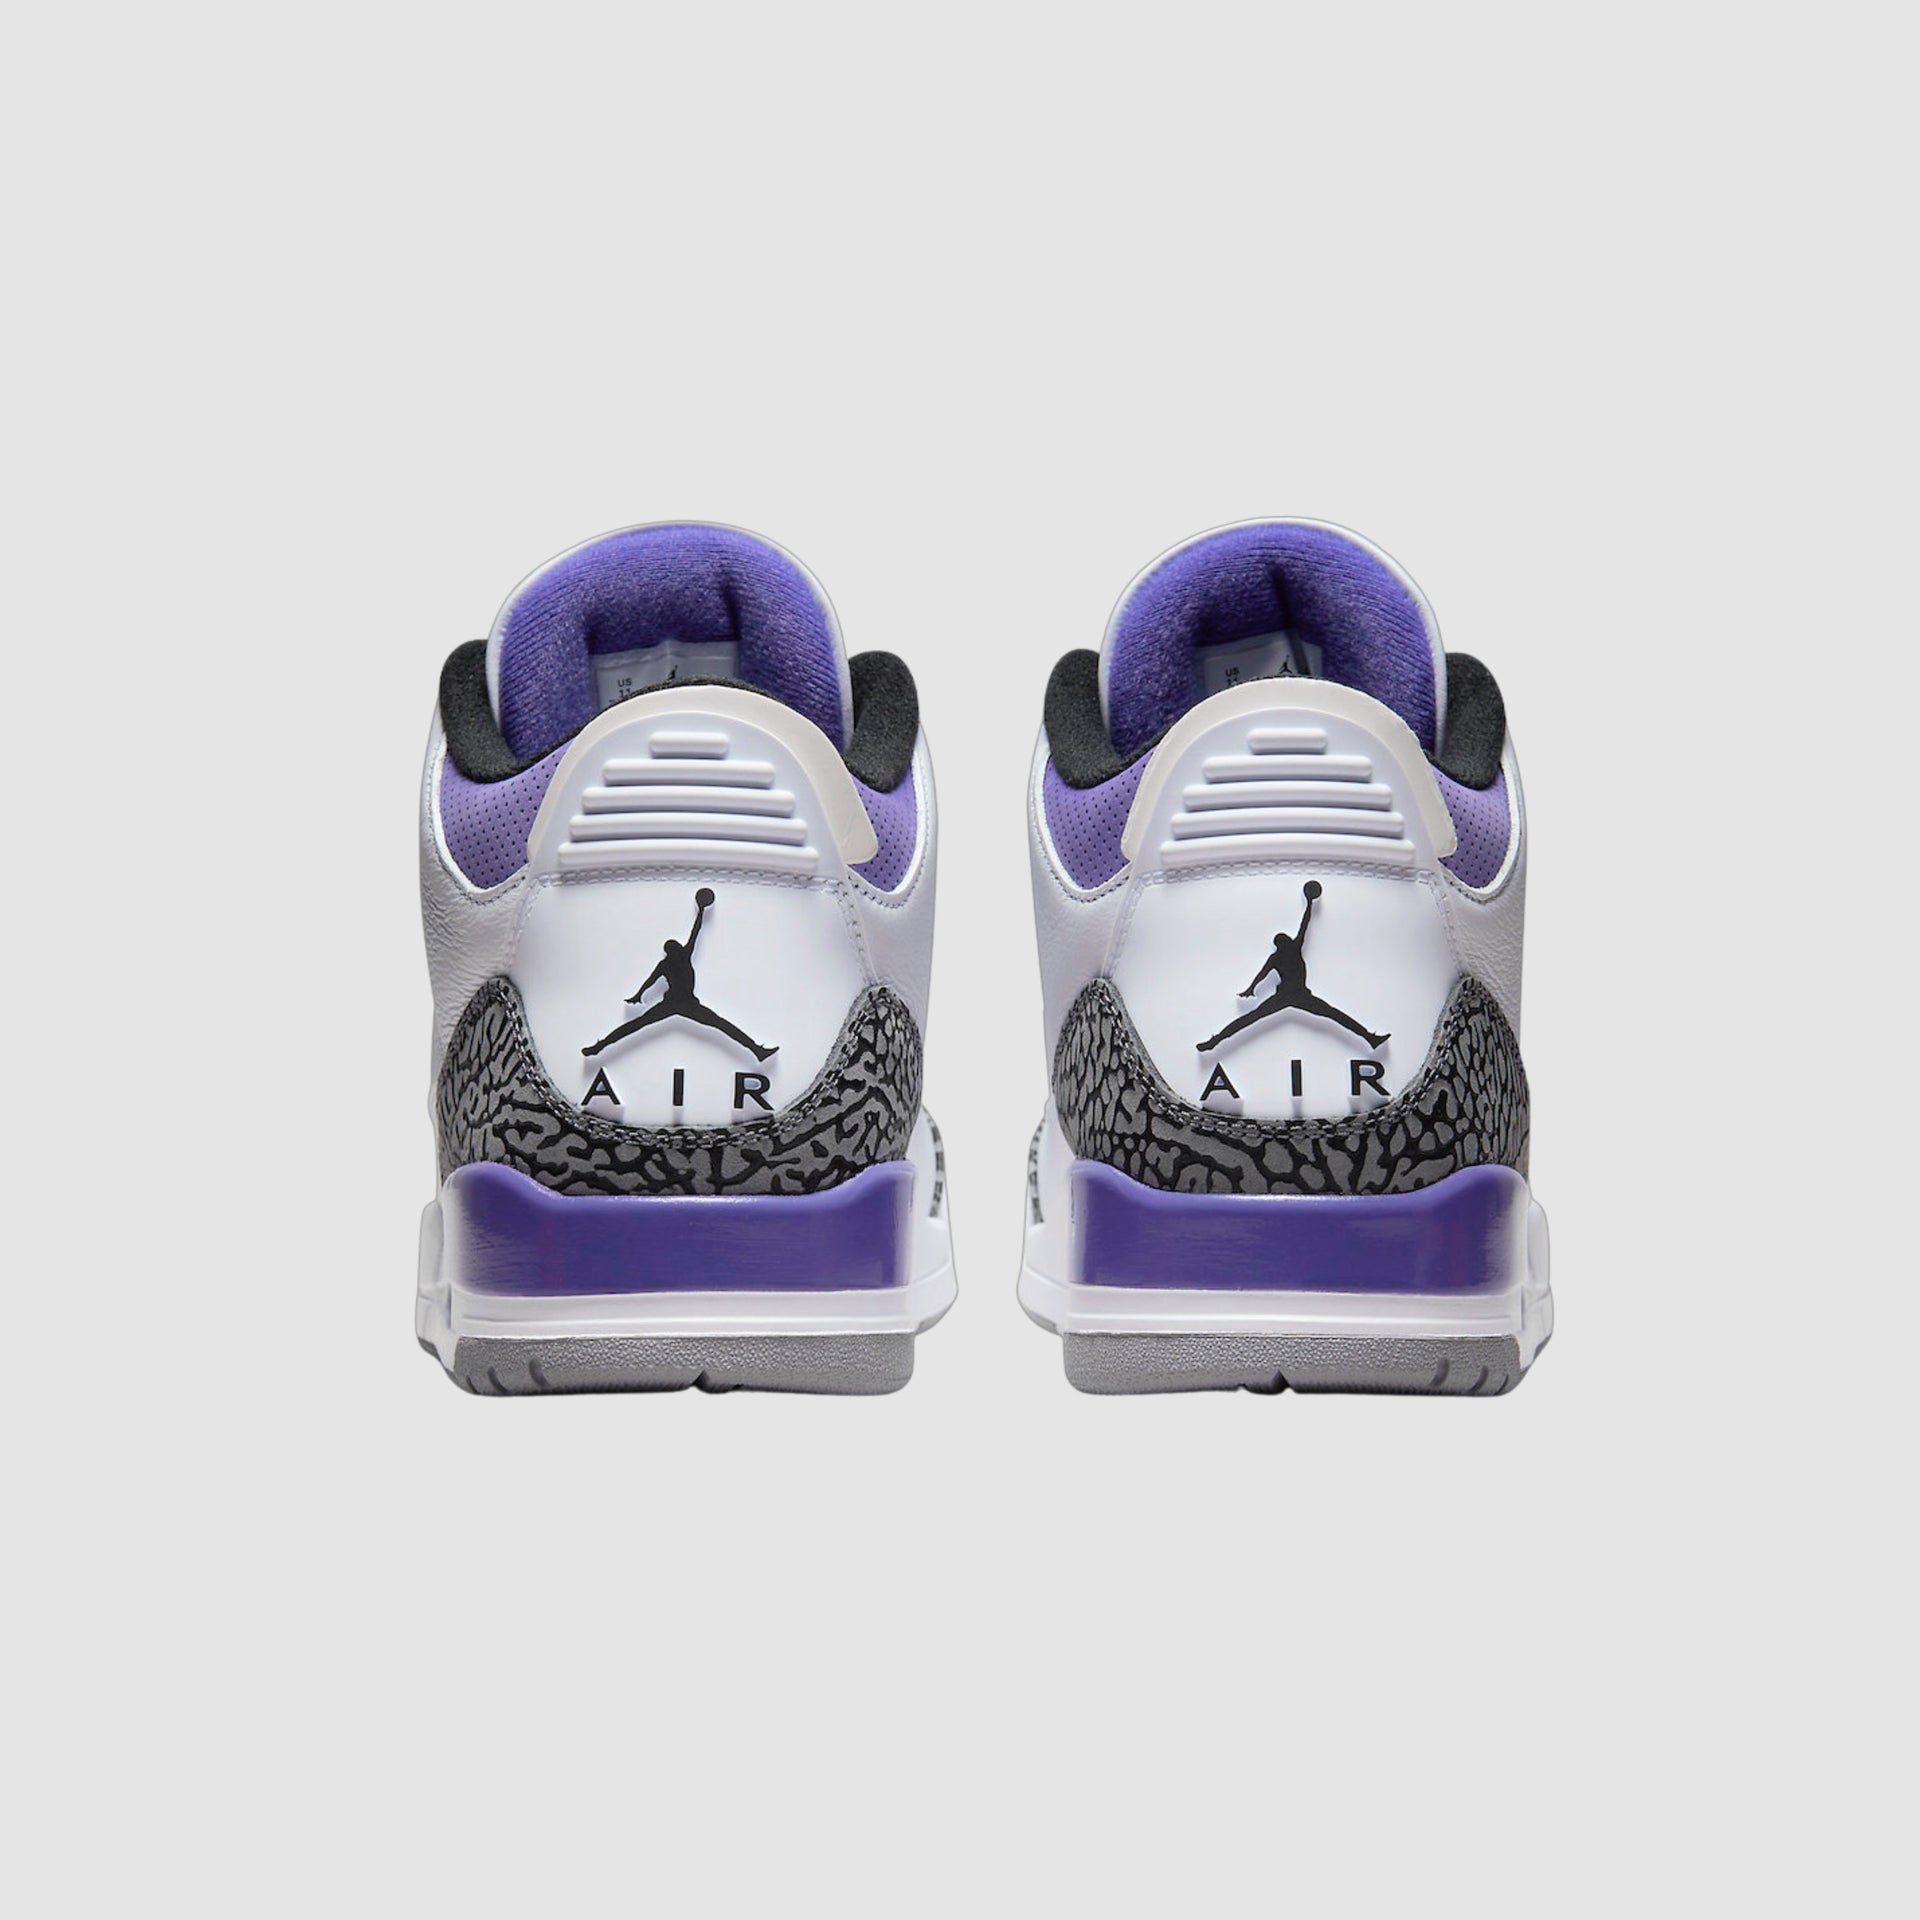 Air Jordan 3 “Dark Iris”